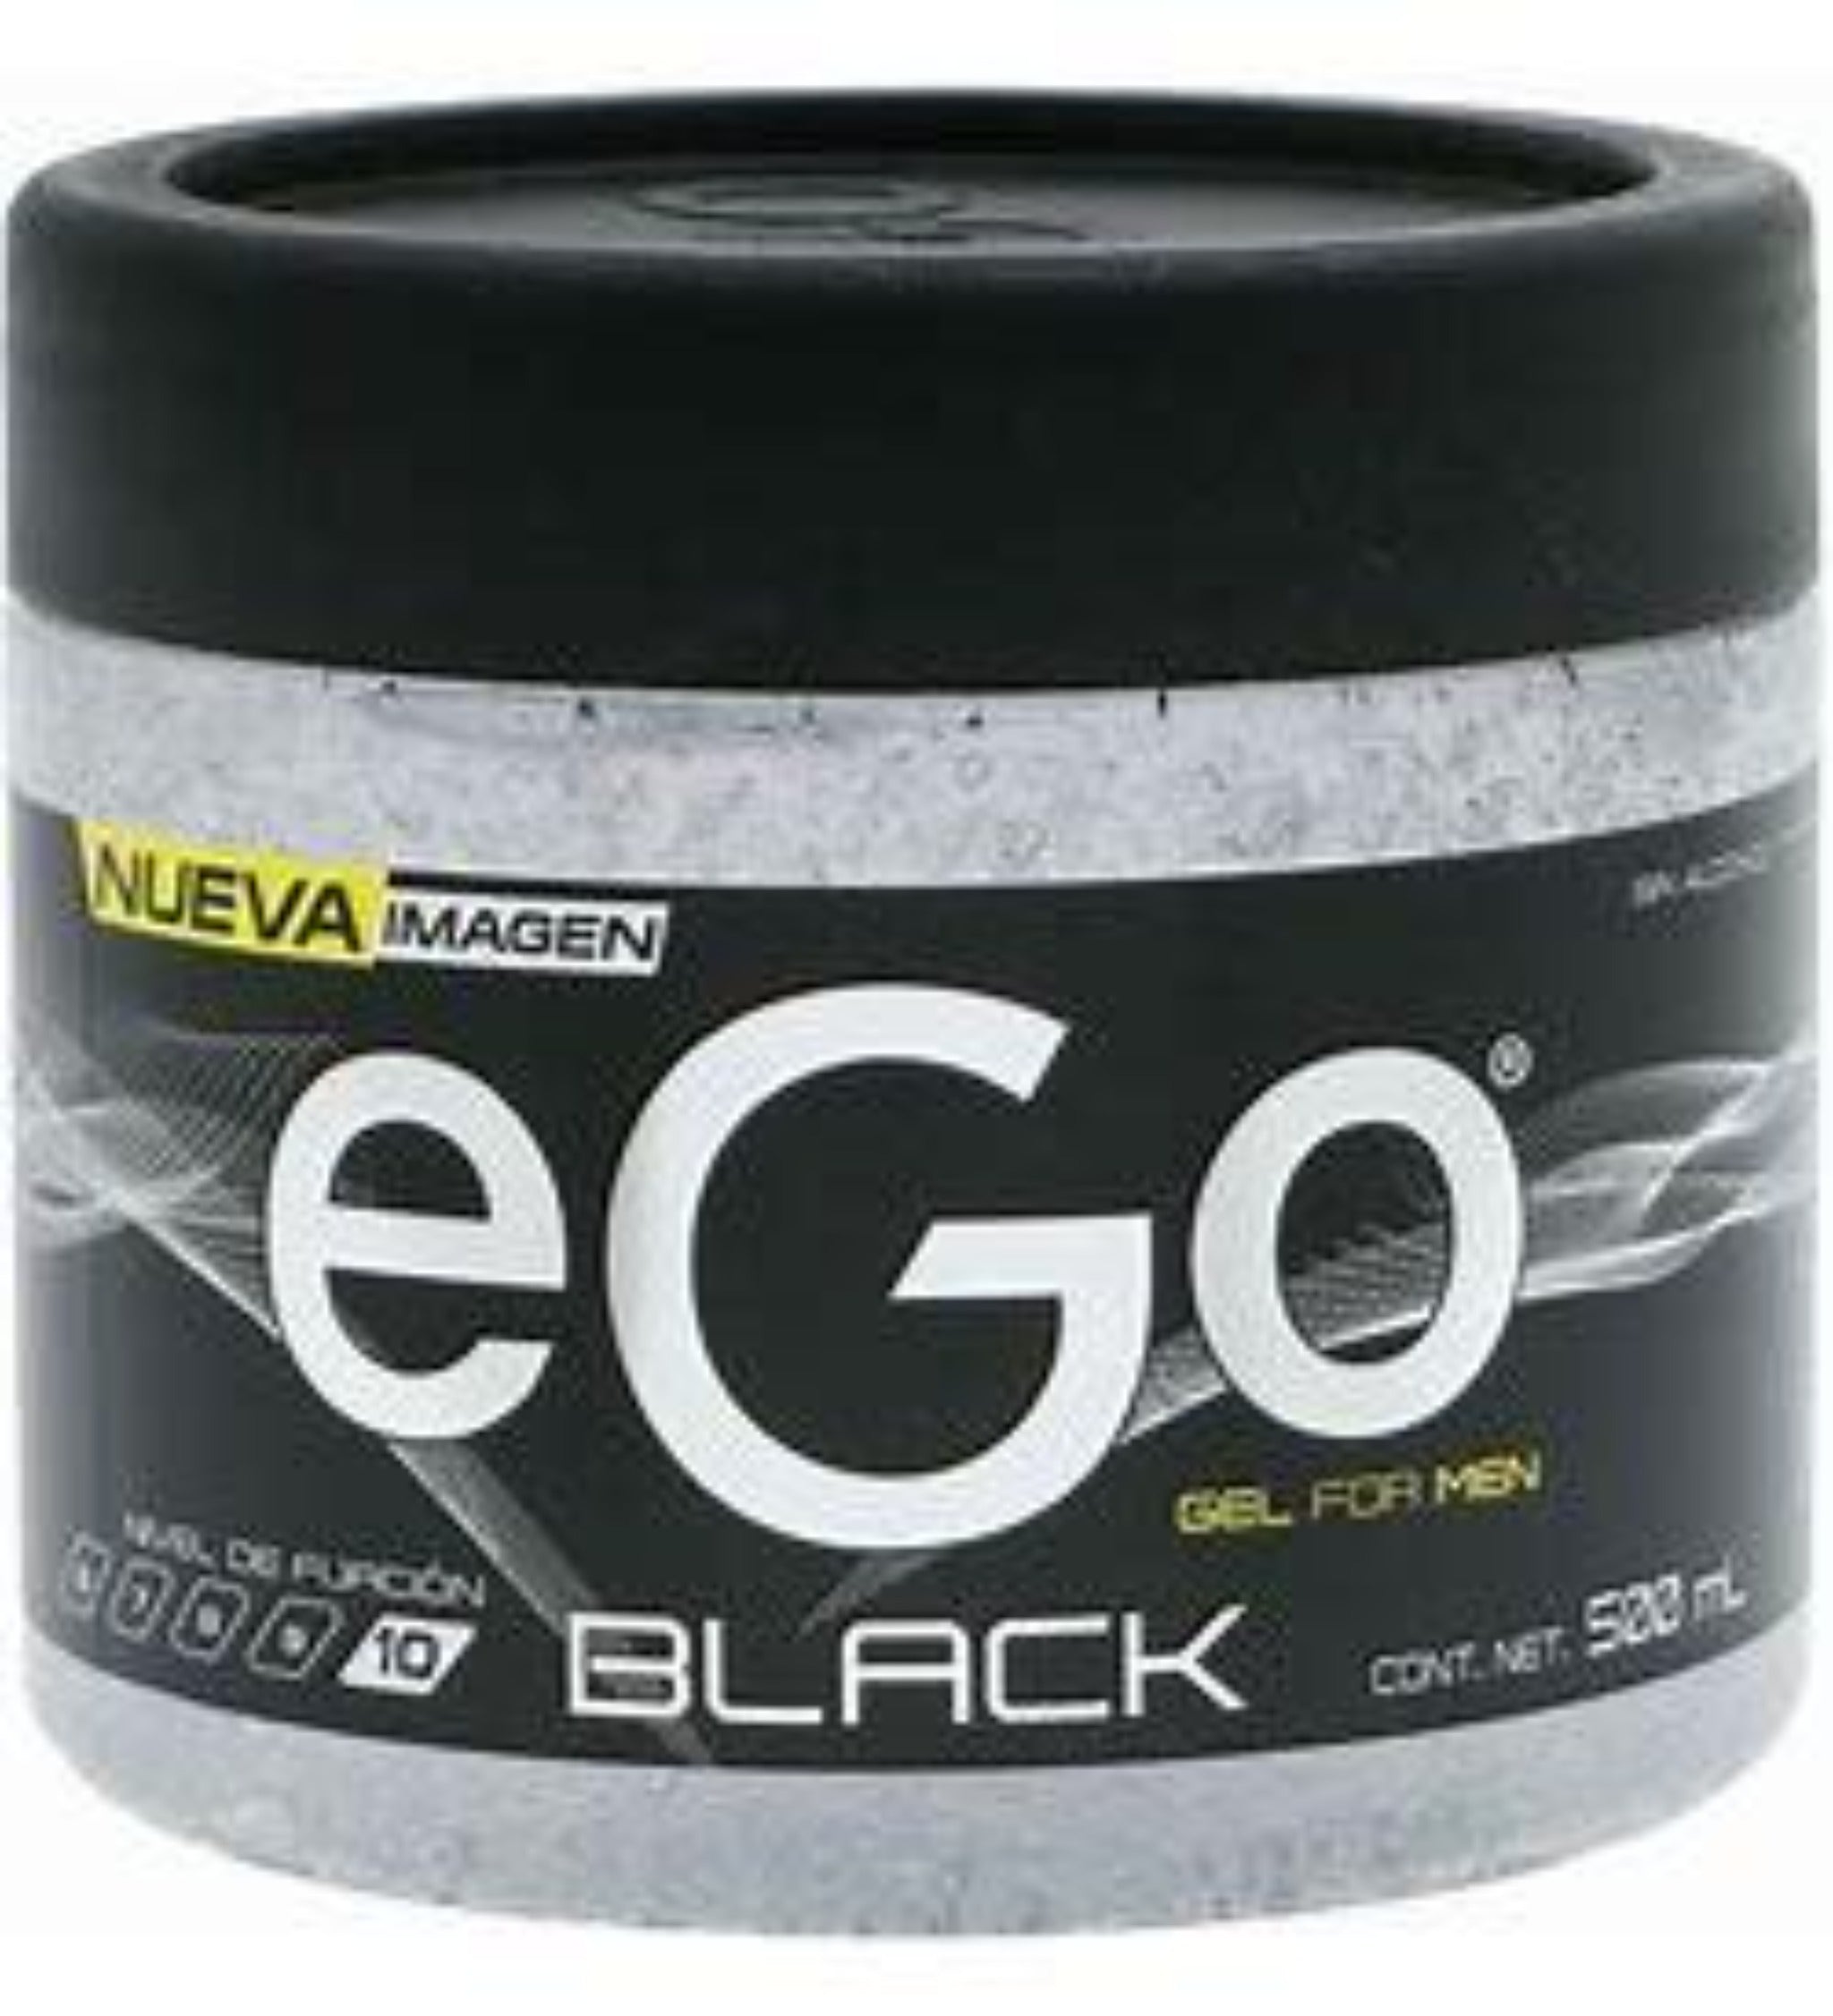 Ego Gel Black 16.91 oz